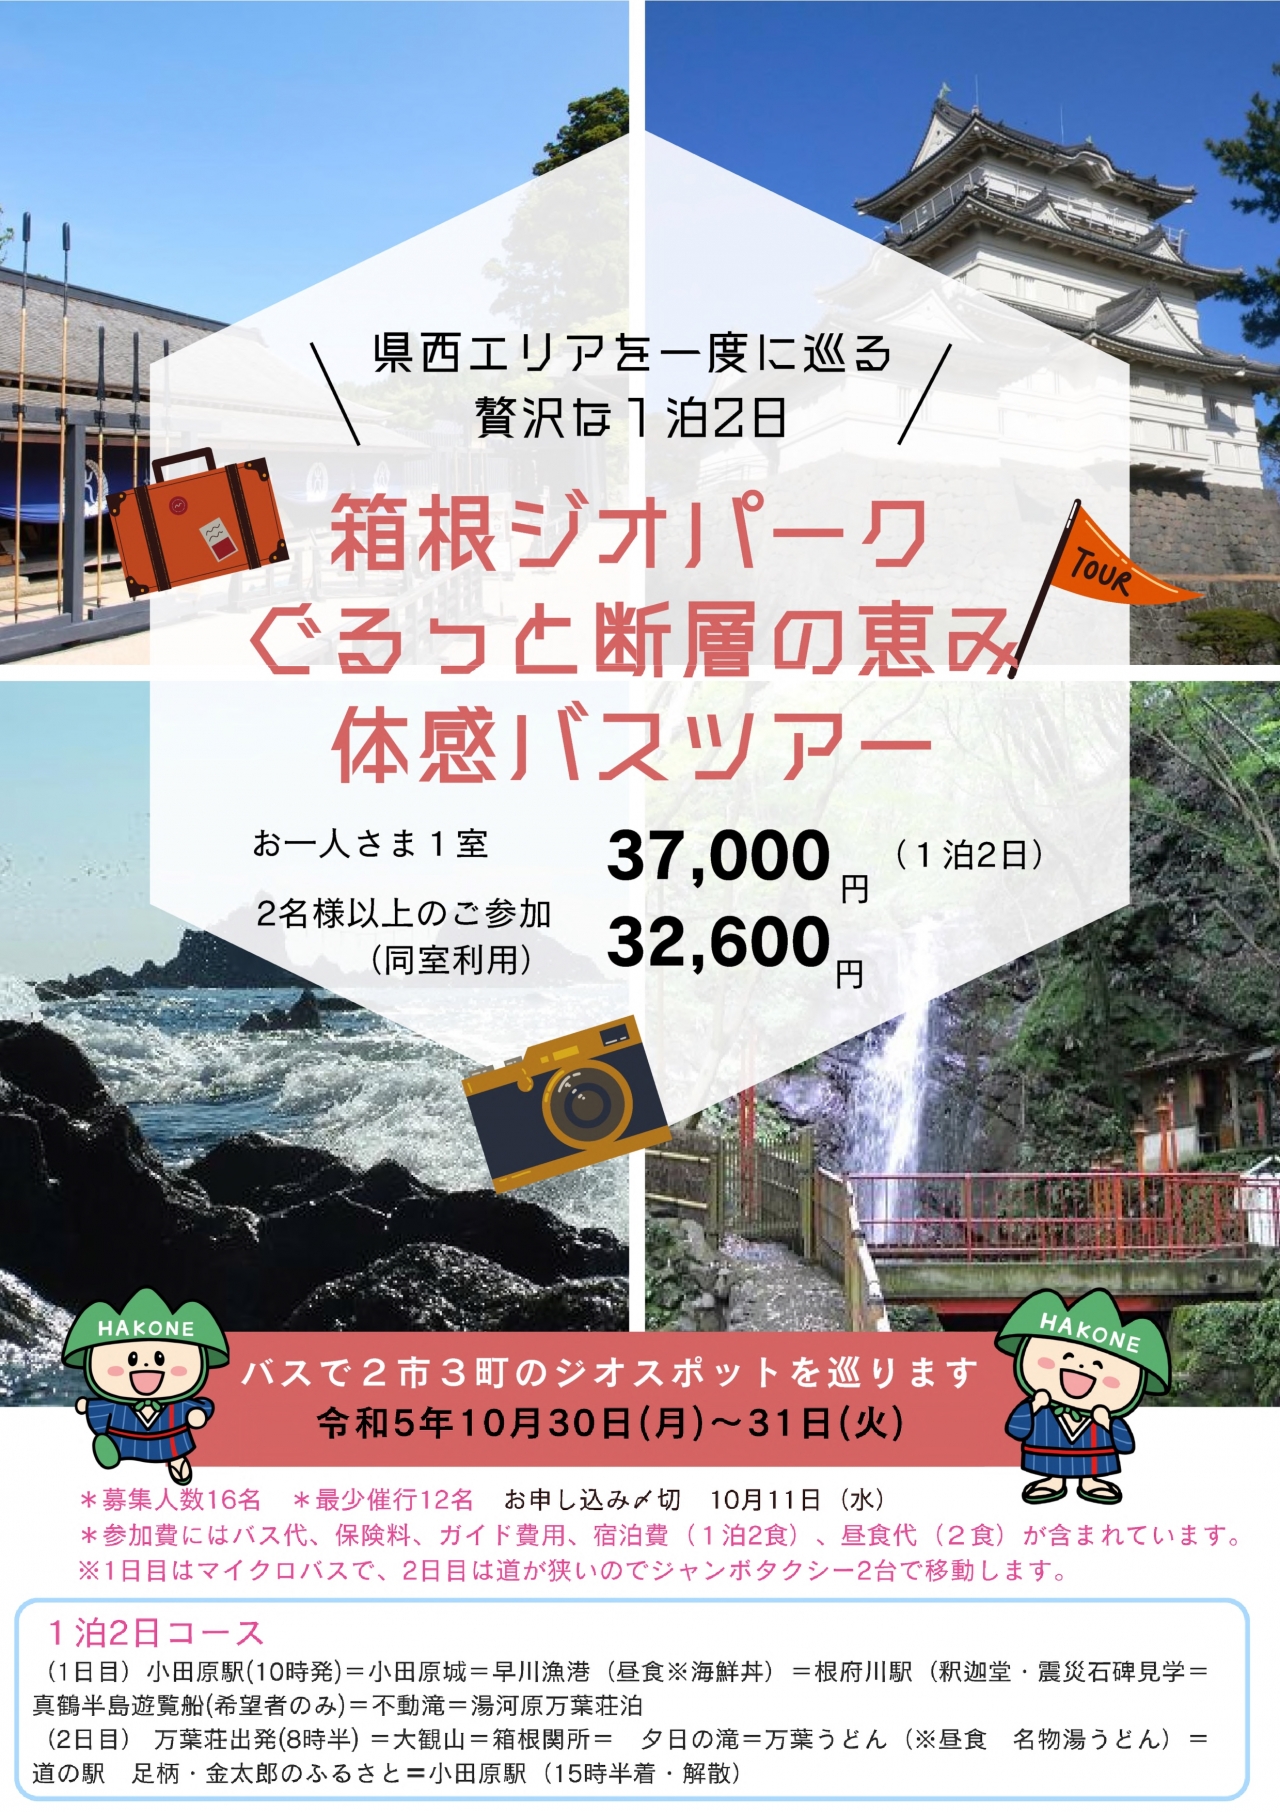 「箱根ジオパーク ぐるっと断層の恵み 体感バスツアー」参加者募集!